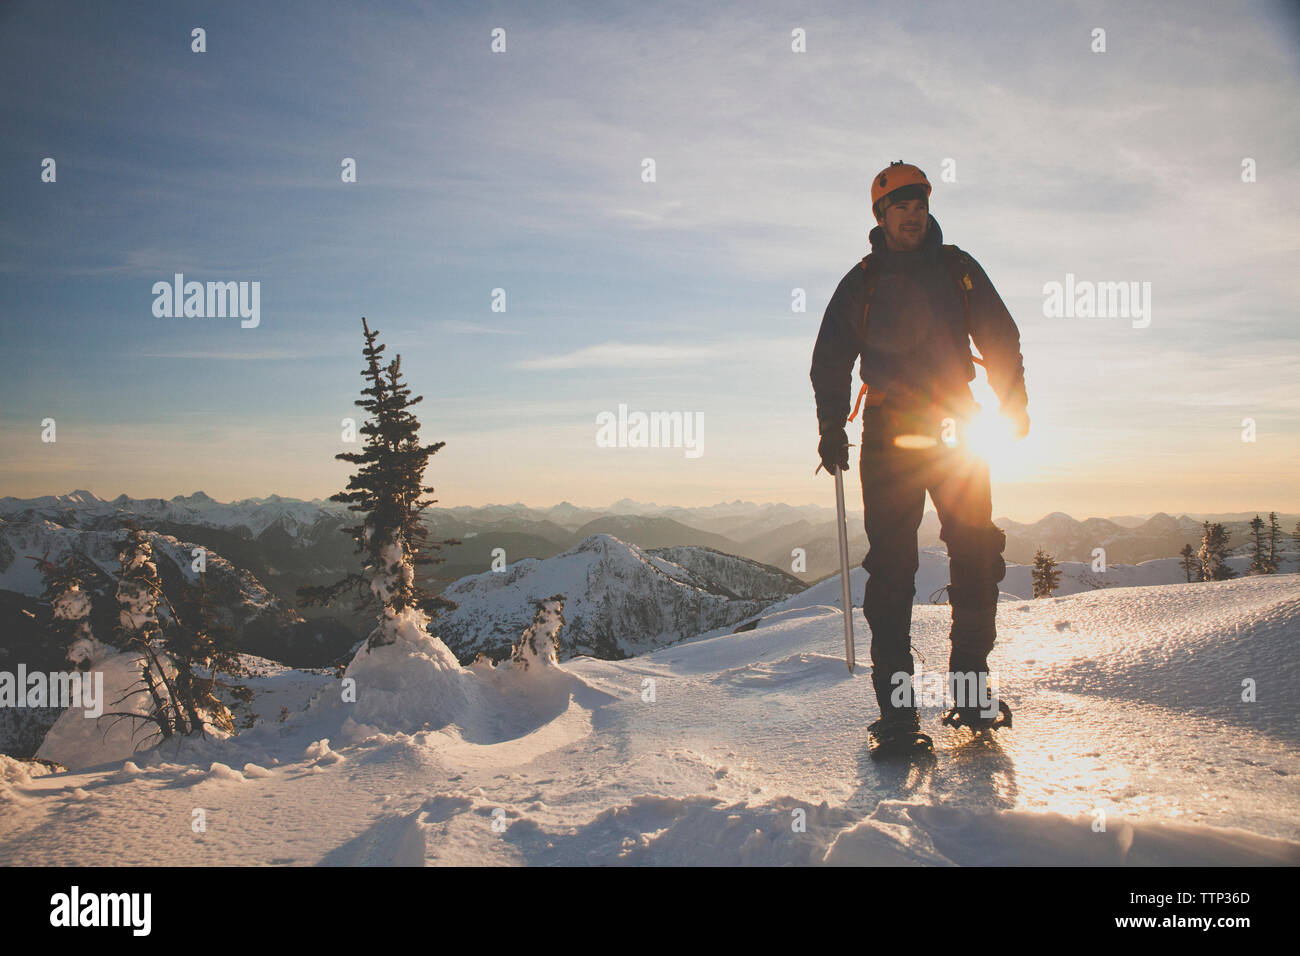 Toute la longueur du randonneur avec piolet alpinisme sur les montagnes couronnées de neige contre le ciel au coucher du soleil Banque D'Images